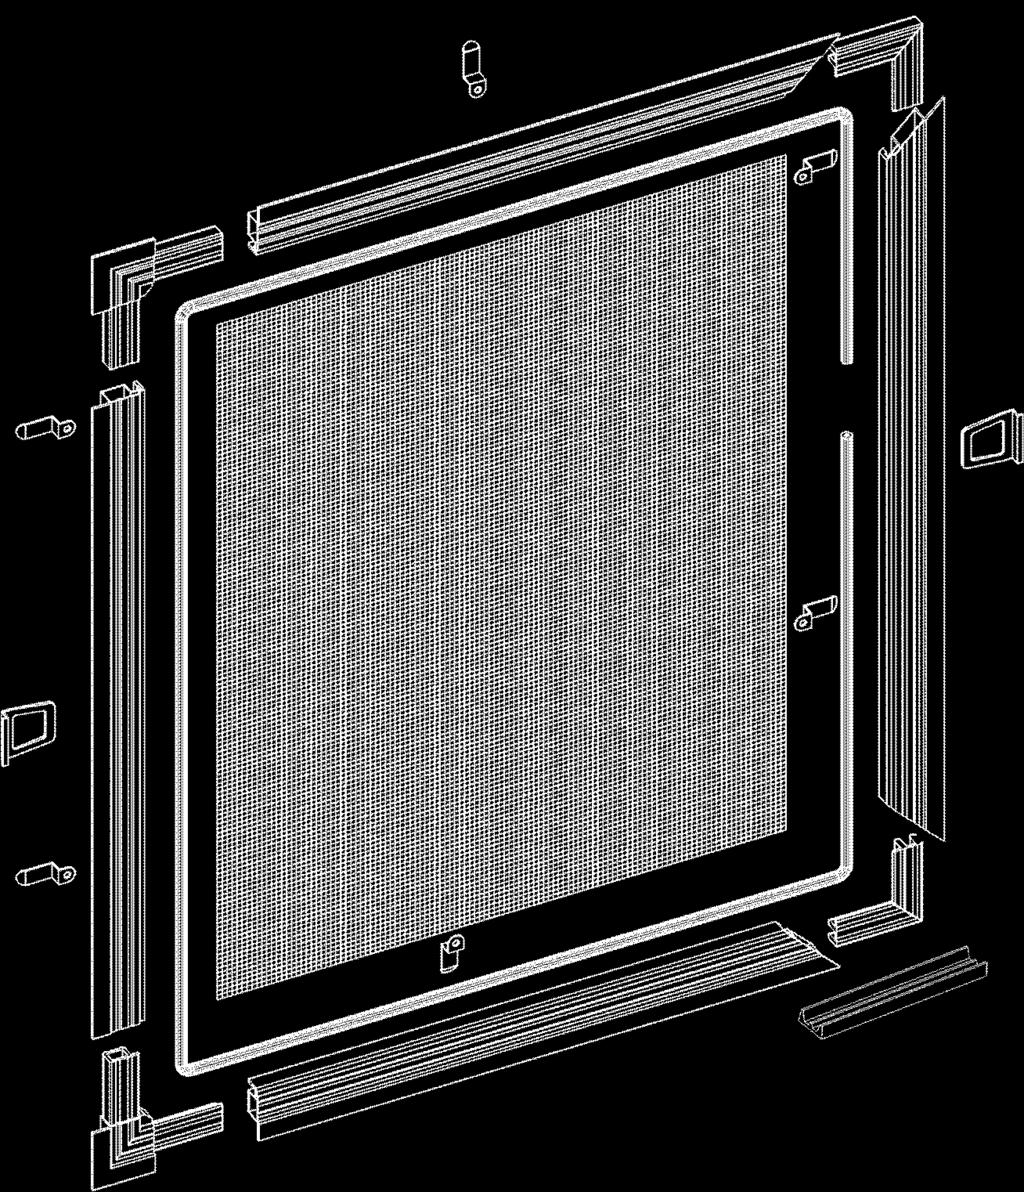 Kód Názov m.j. H0070 Spája rohový vnútorný 49x49x9,5 mm plast ks H0010.# Zvrtlík 10 mm, kov - # pár H1040 Sie ovina m2 H0012.